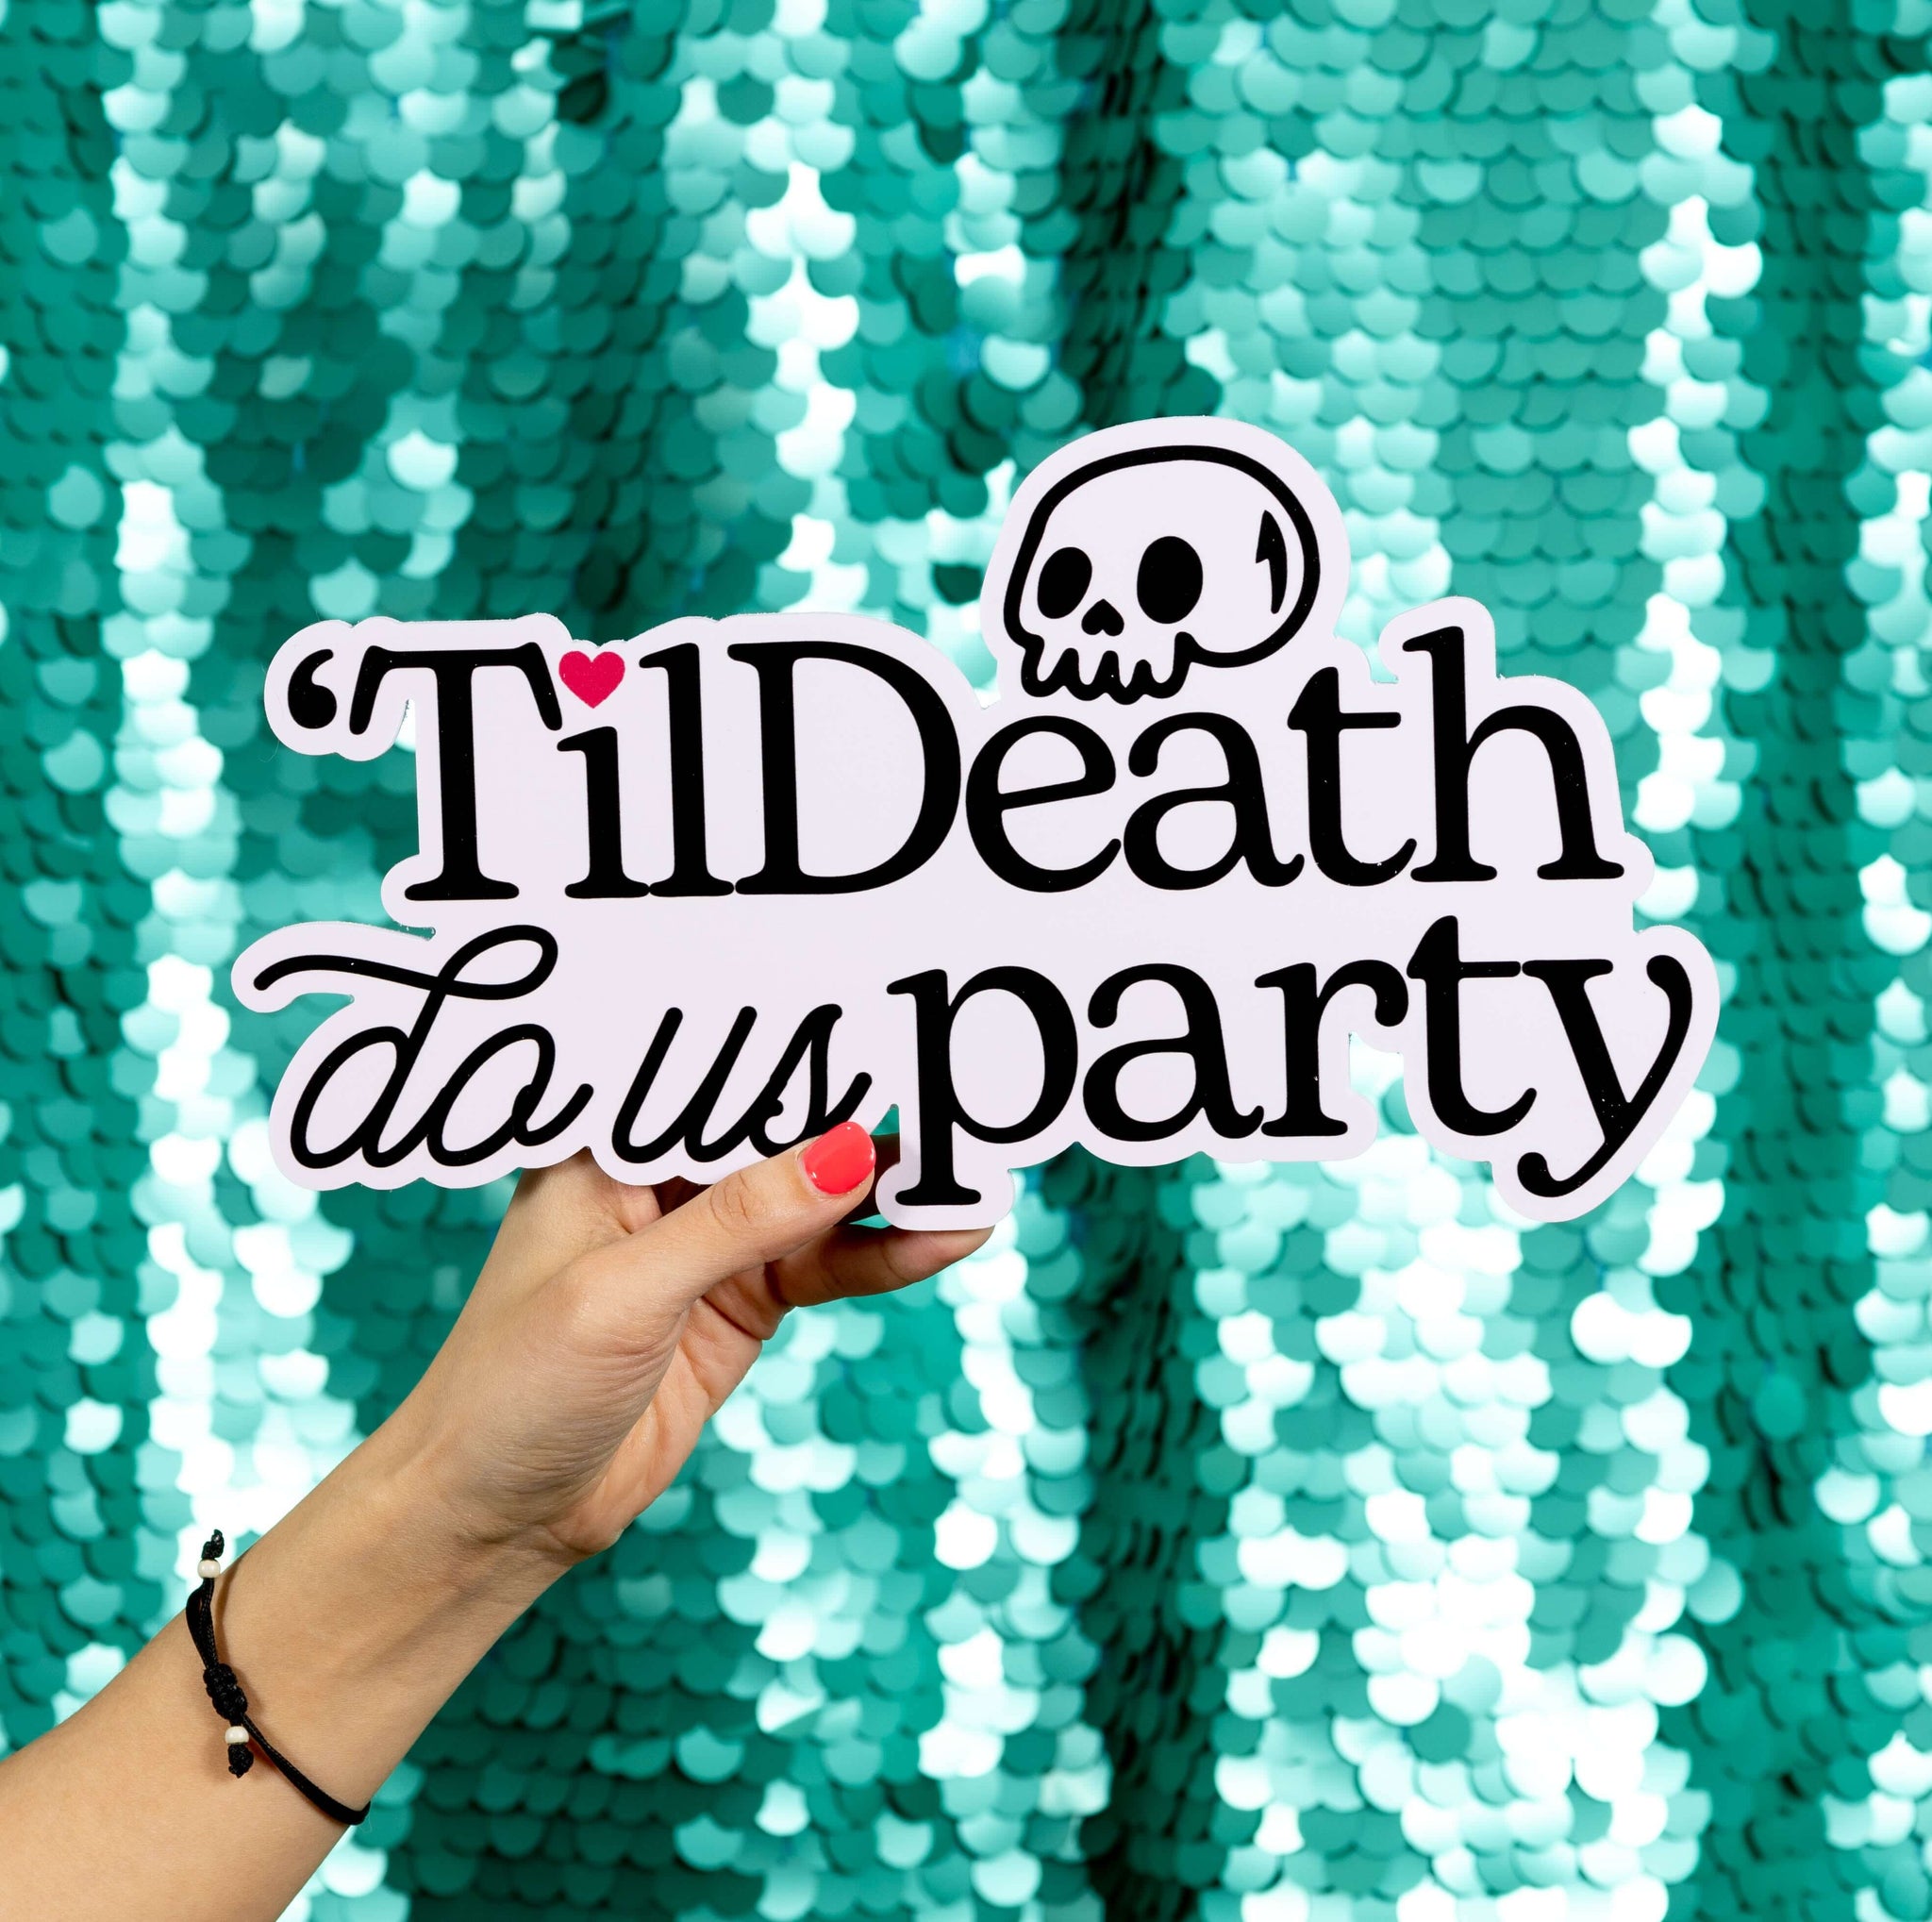 Til Death Us Party Sign, Til Death Us Part Decor, Death Decorations